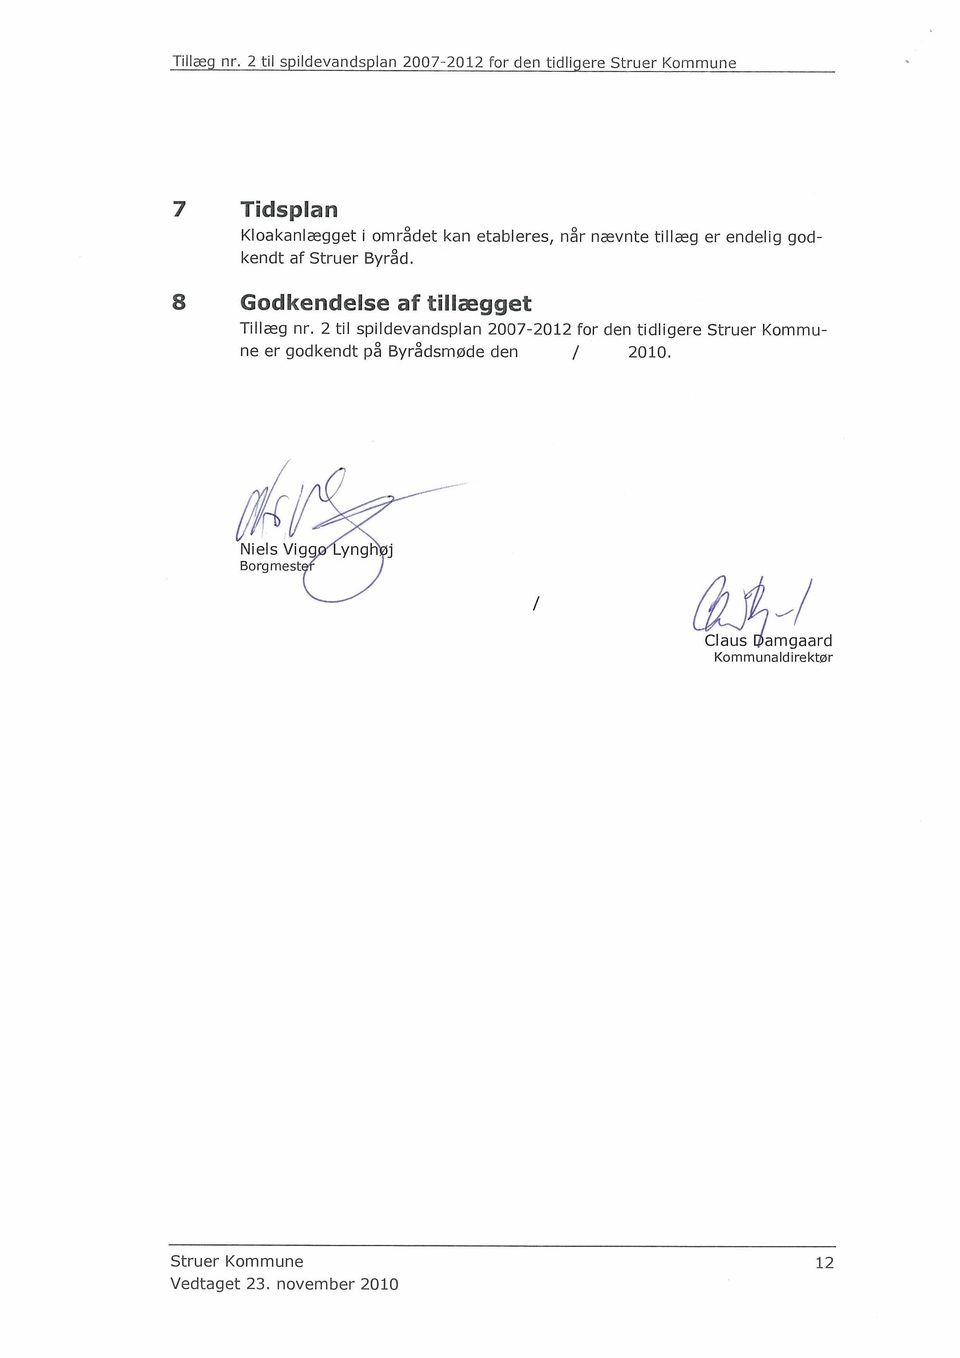 2 til spildevandsplan 2007-2012 for den tidligere Struer Kommune er godkendt på